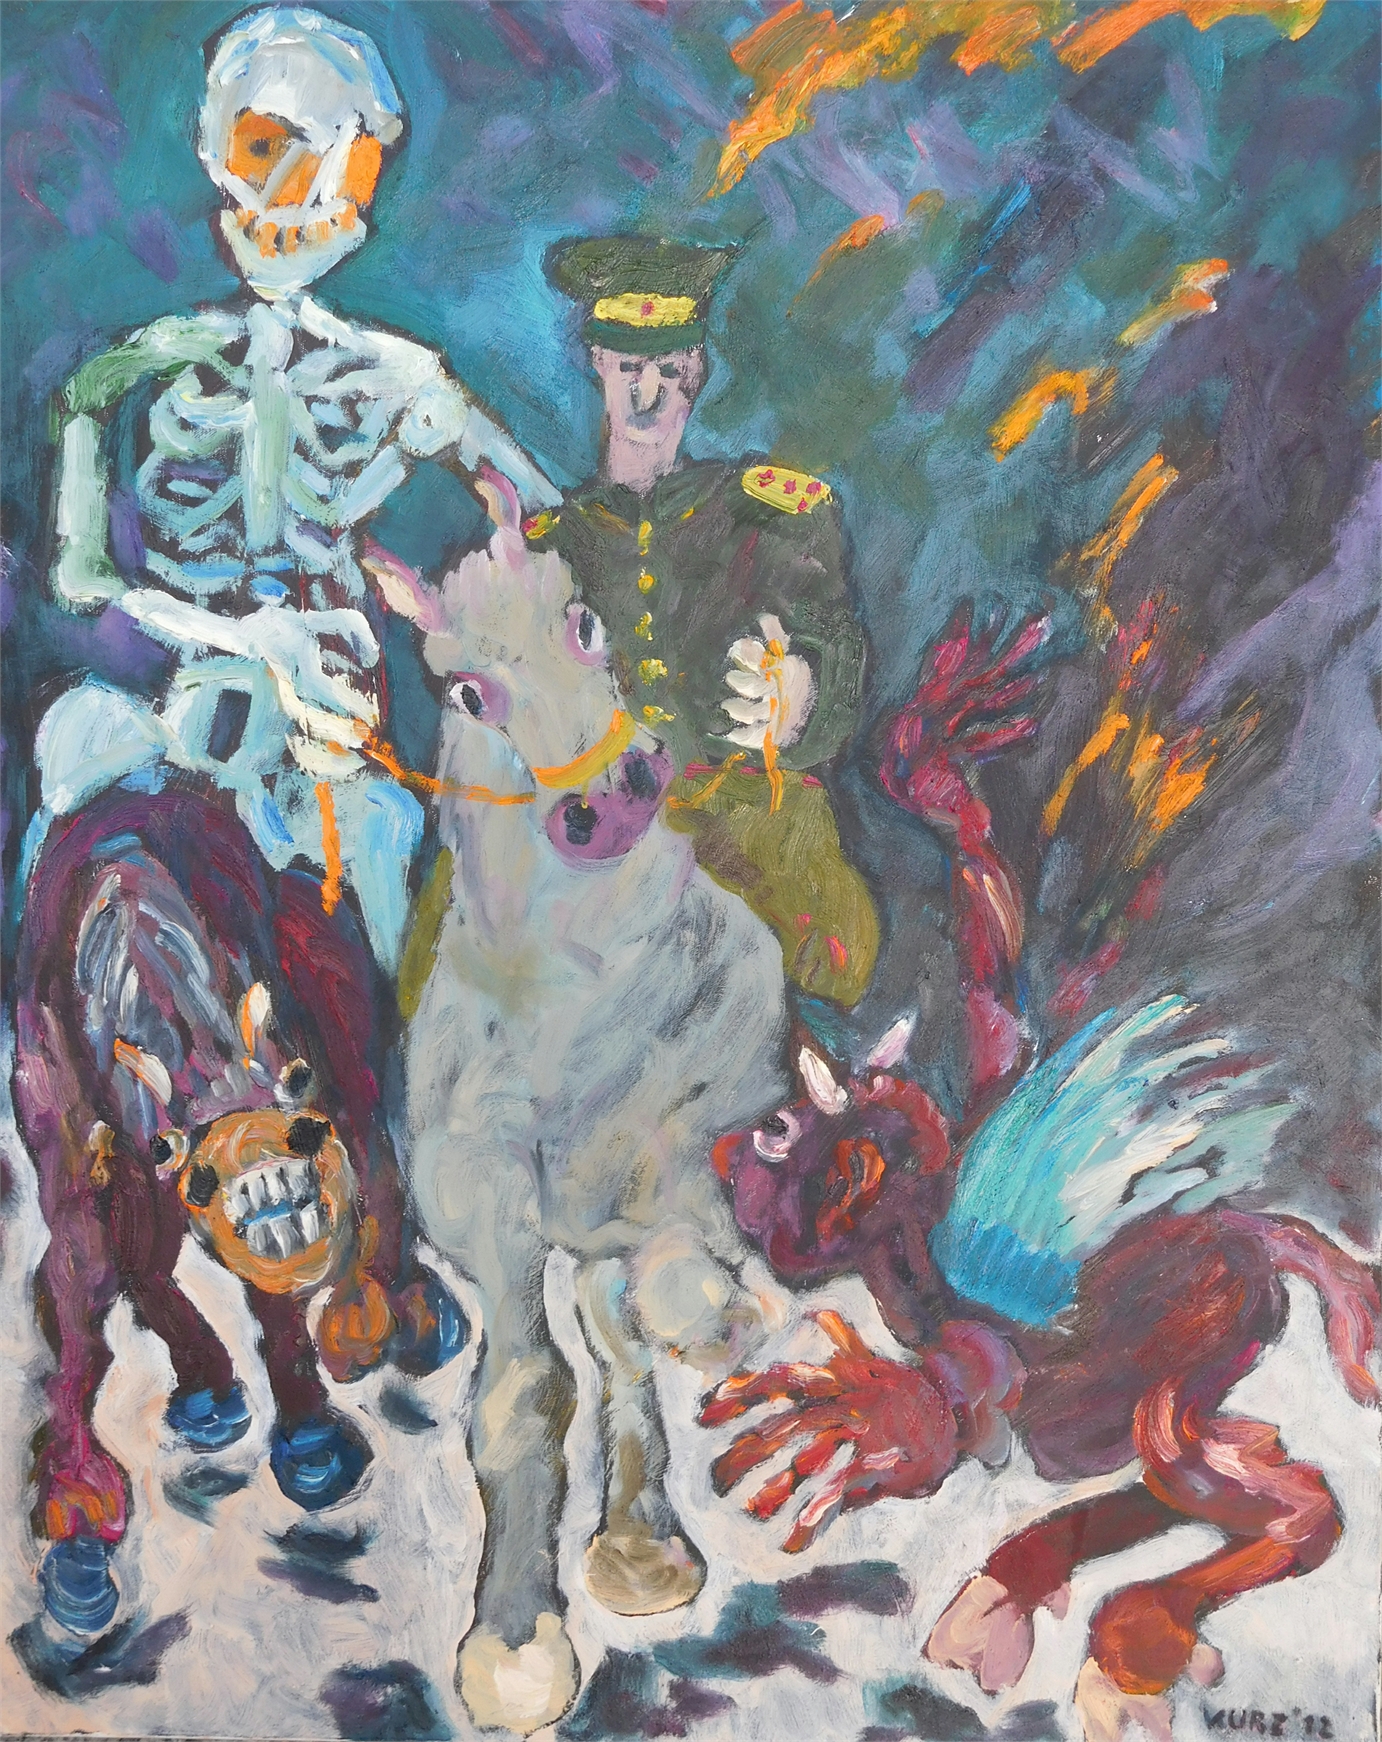 Ritter, Tod und Teufel, 2012, Oel auf Cotton, 80x100cm